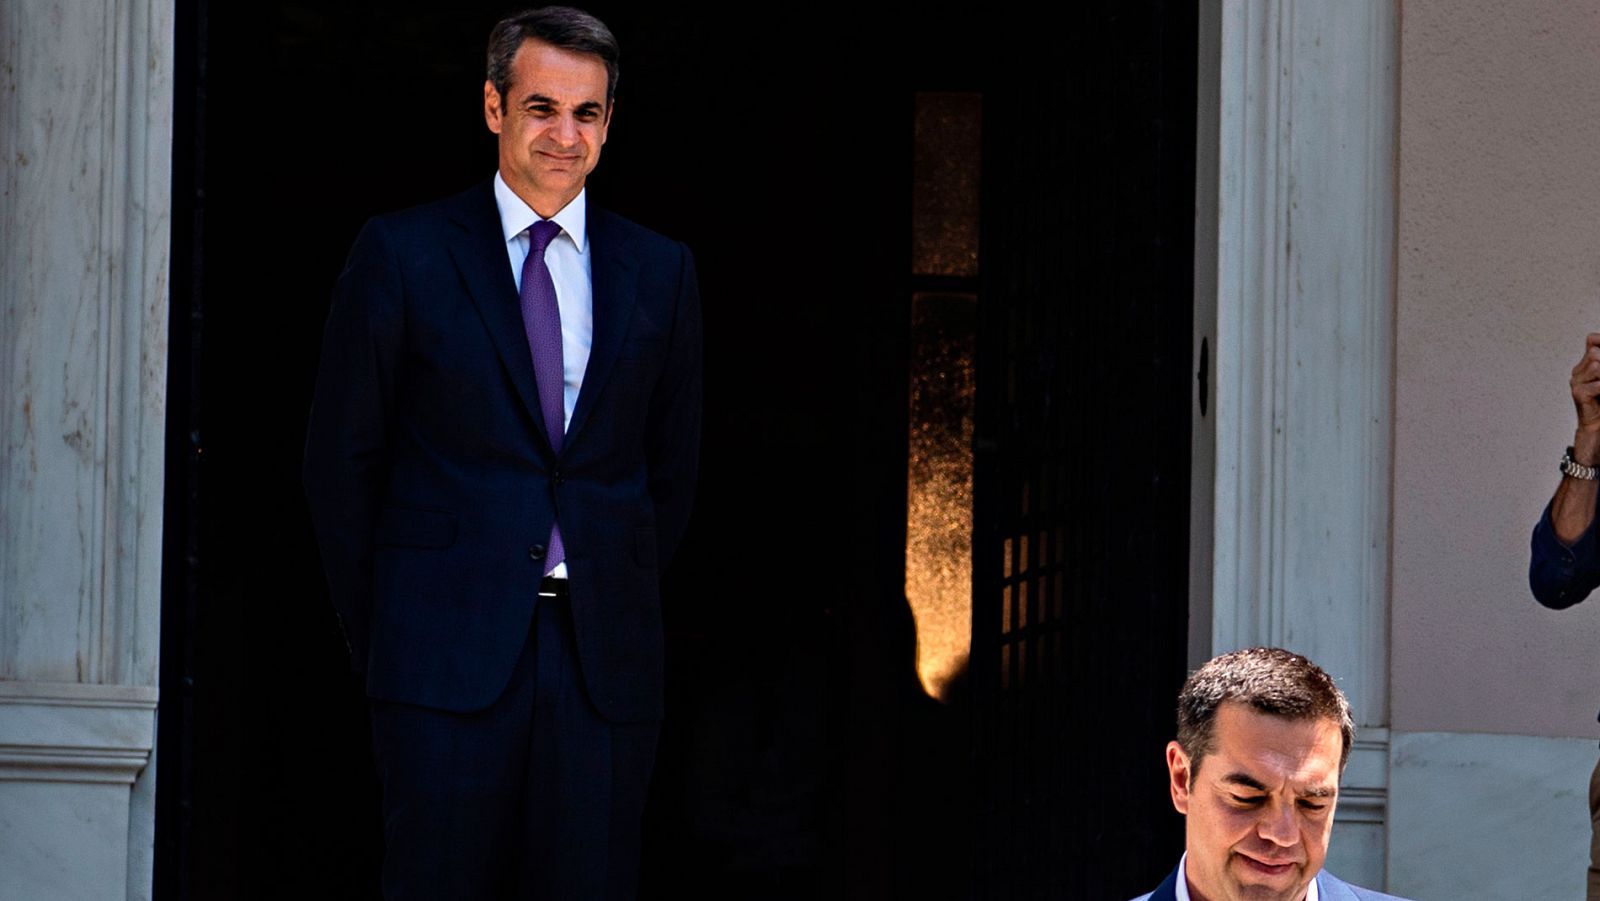 Grecia - Kyriakos Mitsotakis releva a Alexis Tsipras al frente del Gobierno de Grecia